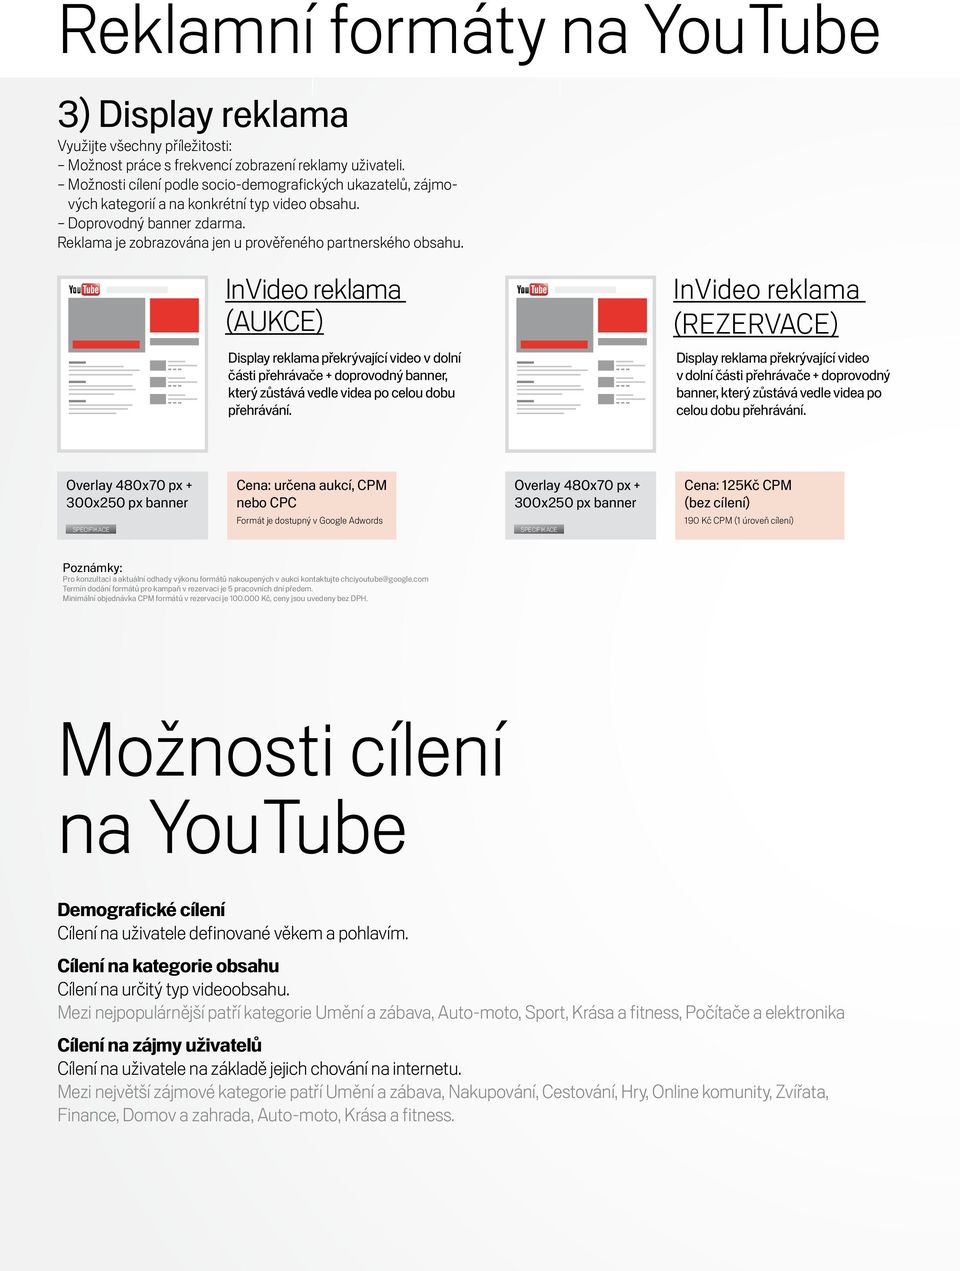 InVideo reklama InVideo reklama (REZERVACE) Display reklama překrývající video v dolní části přehrávače + doprovodný banner, který zůstává vedle videa po celou dobu přehrávání.